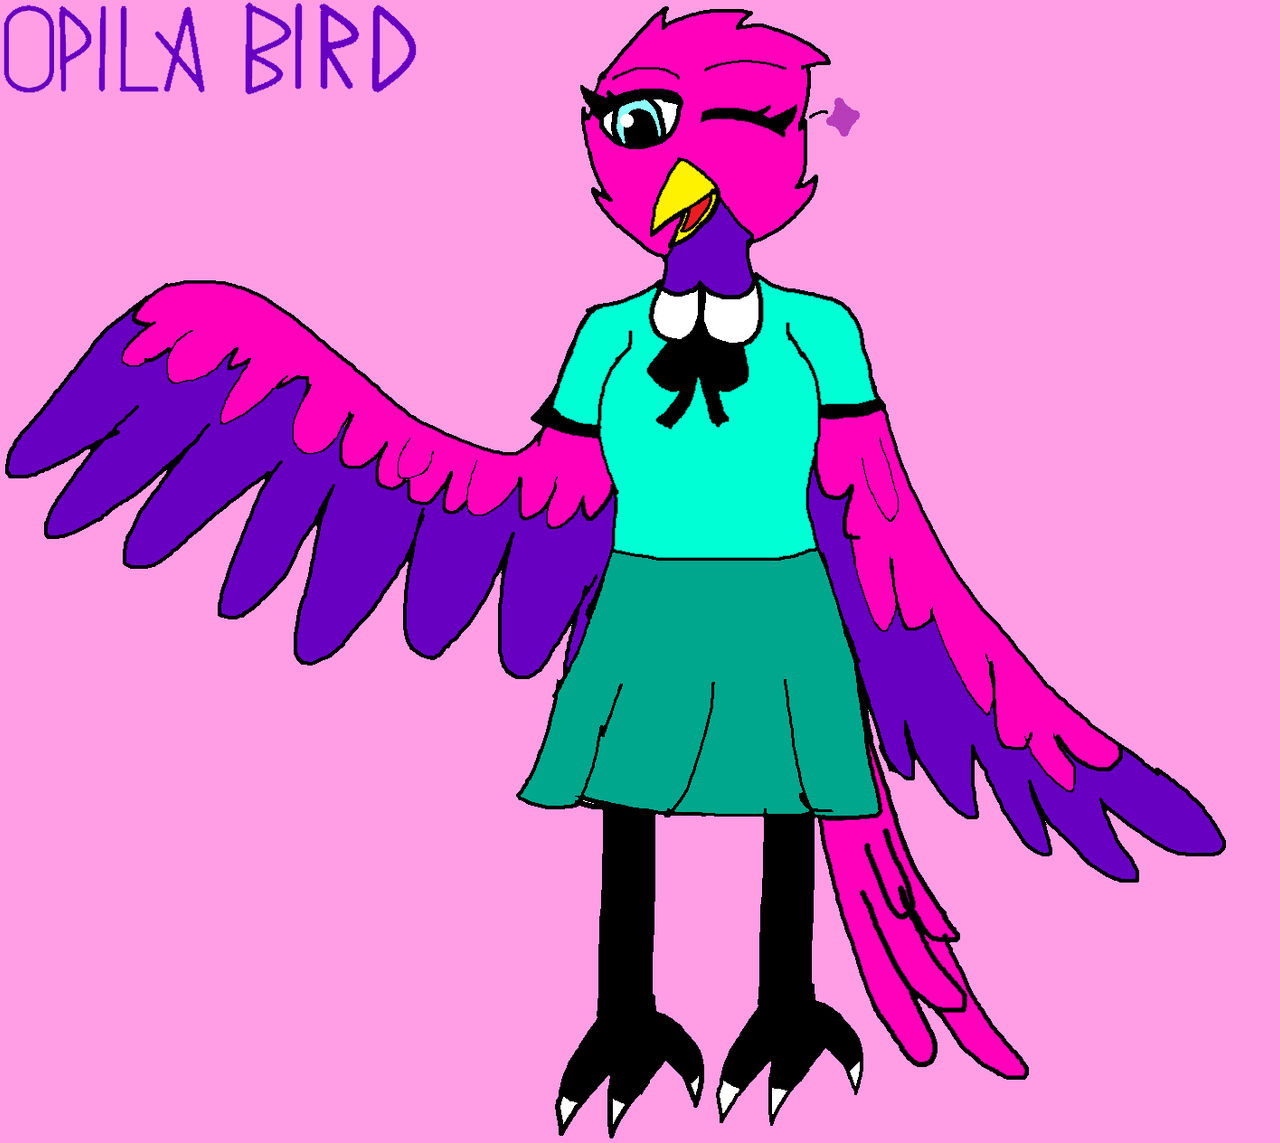 Opila Bird by MerchReviewSprings on DeviantArt